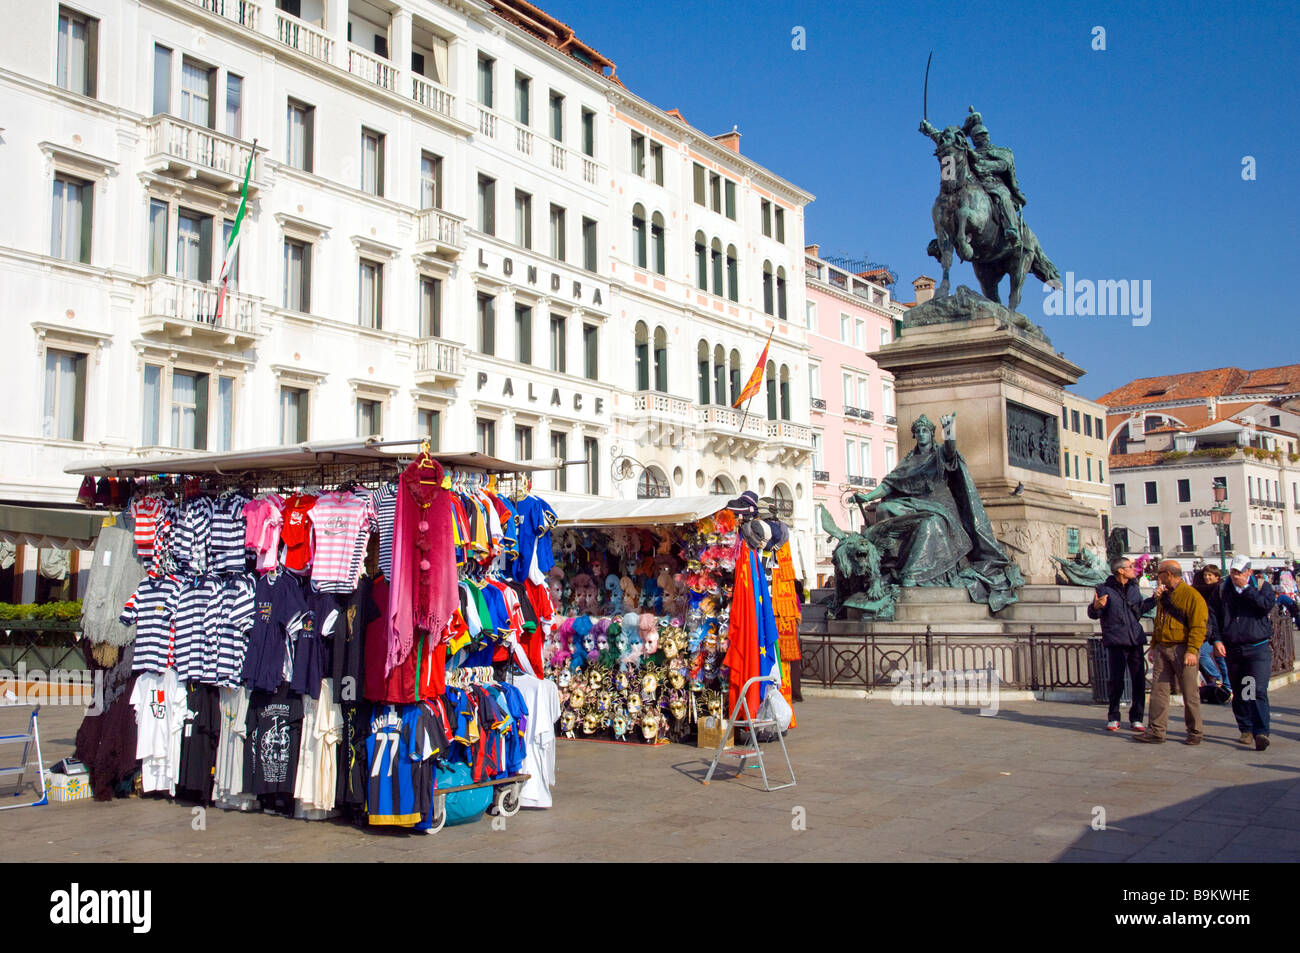 Kiosques et boutiques de souvenirs le long du front de mer à Venise Italie Banque D'Images